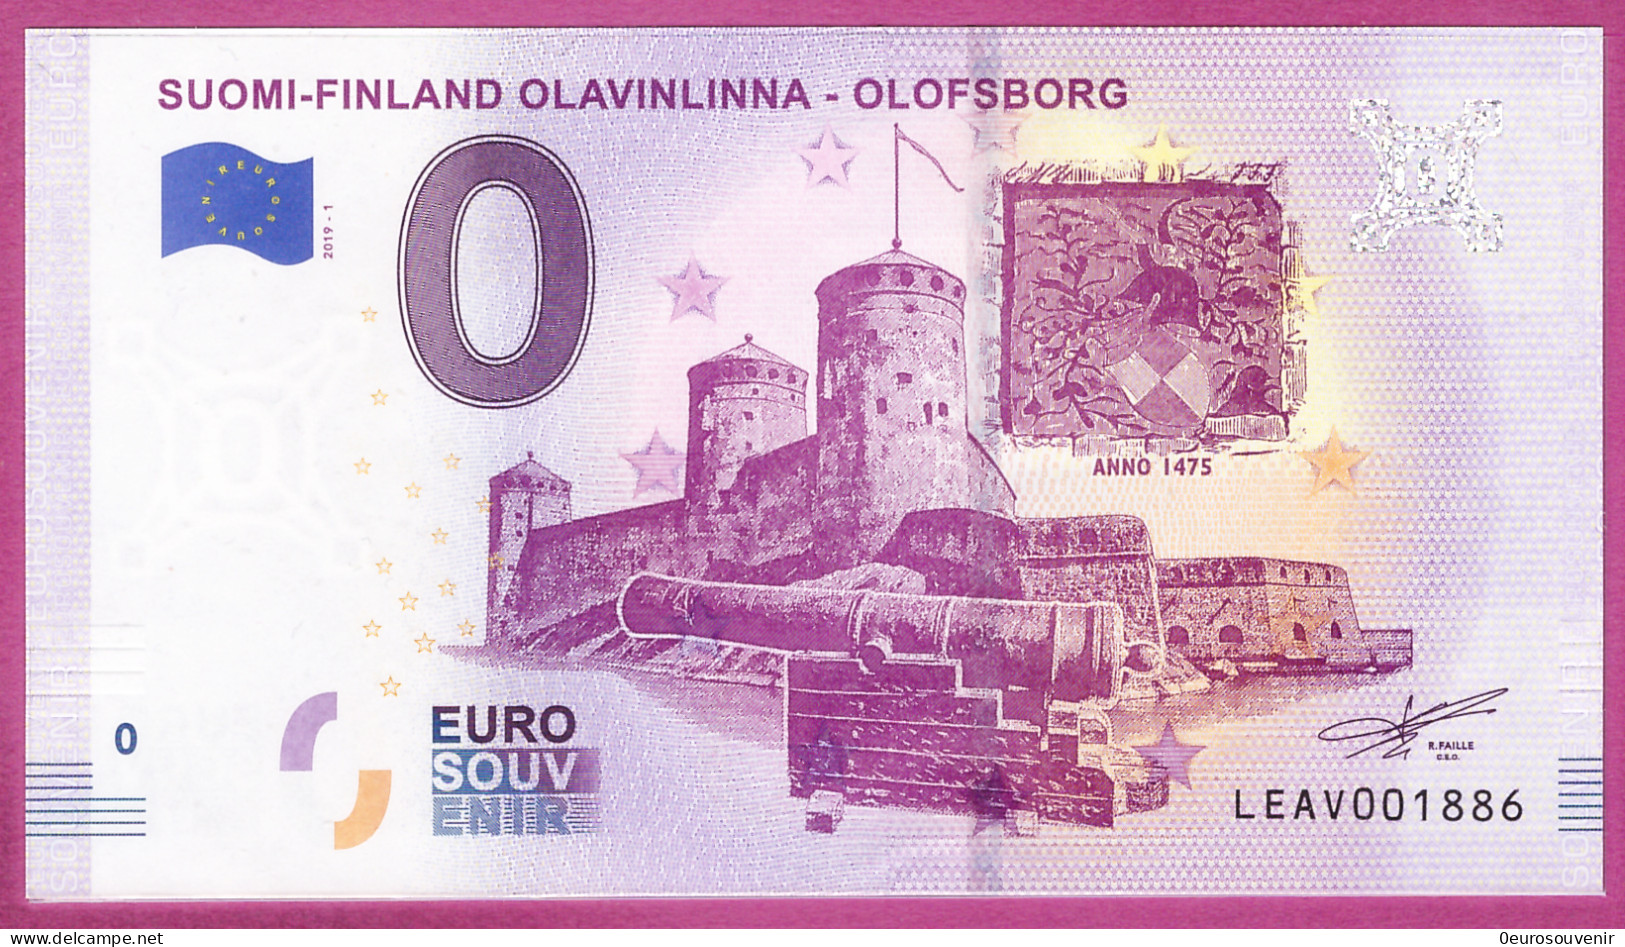 0-Euro LEAV 2019-1 SUOMI-FINLAND OLAVINLINNA - OLOFSBORG - Private Proofs / Unofficial